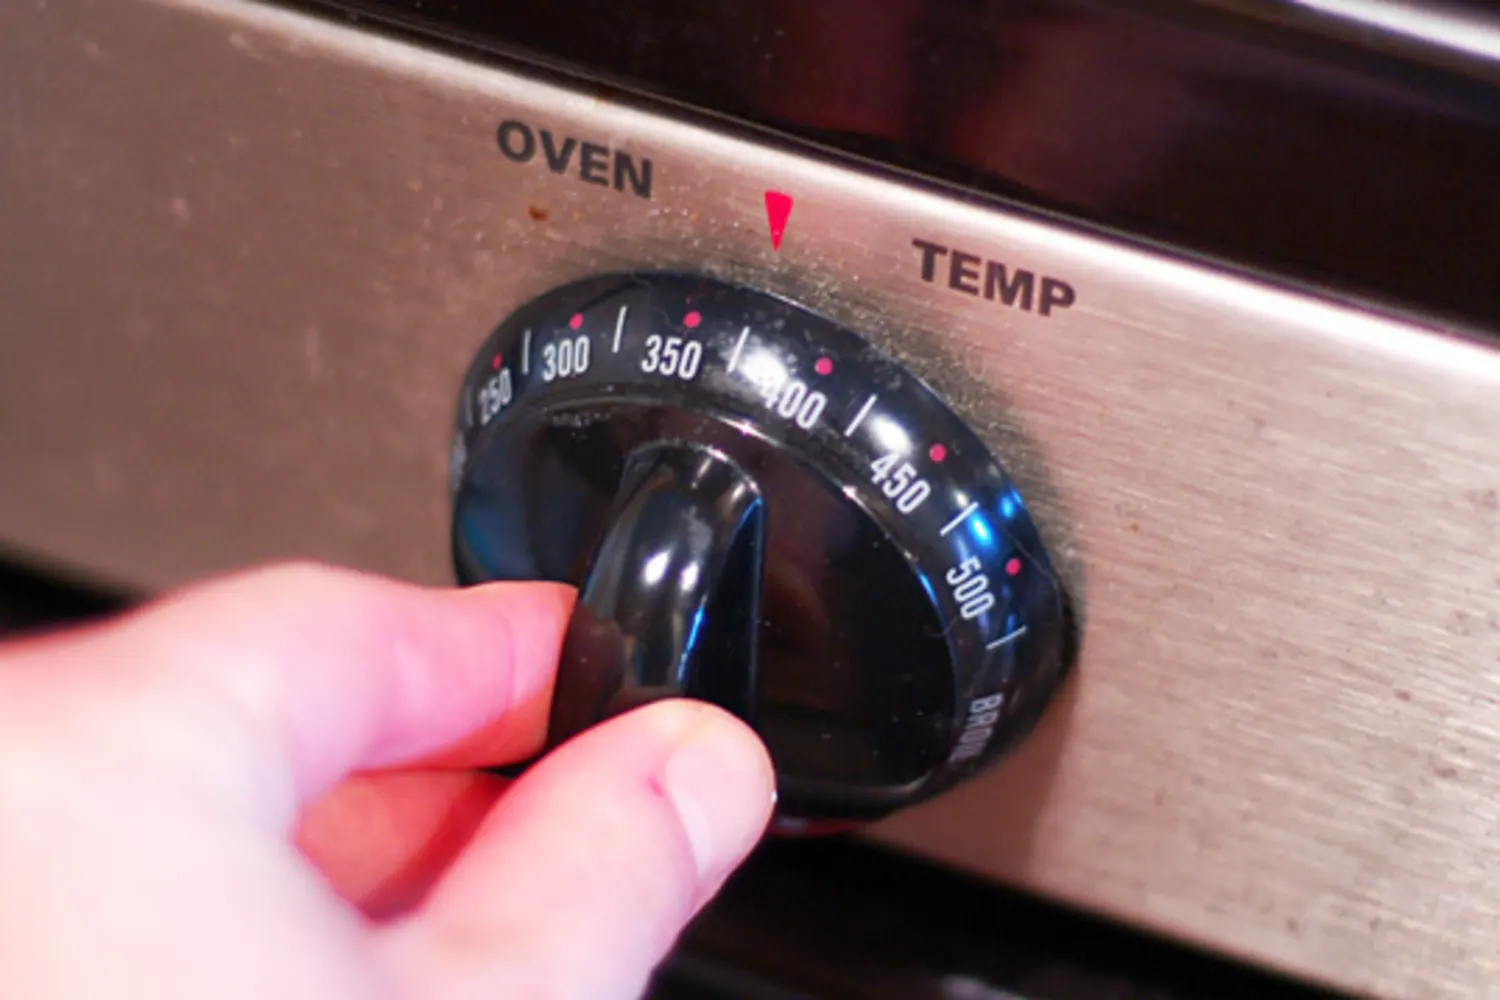 Reason 1: Incorrect Oven Temperature